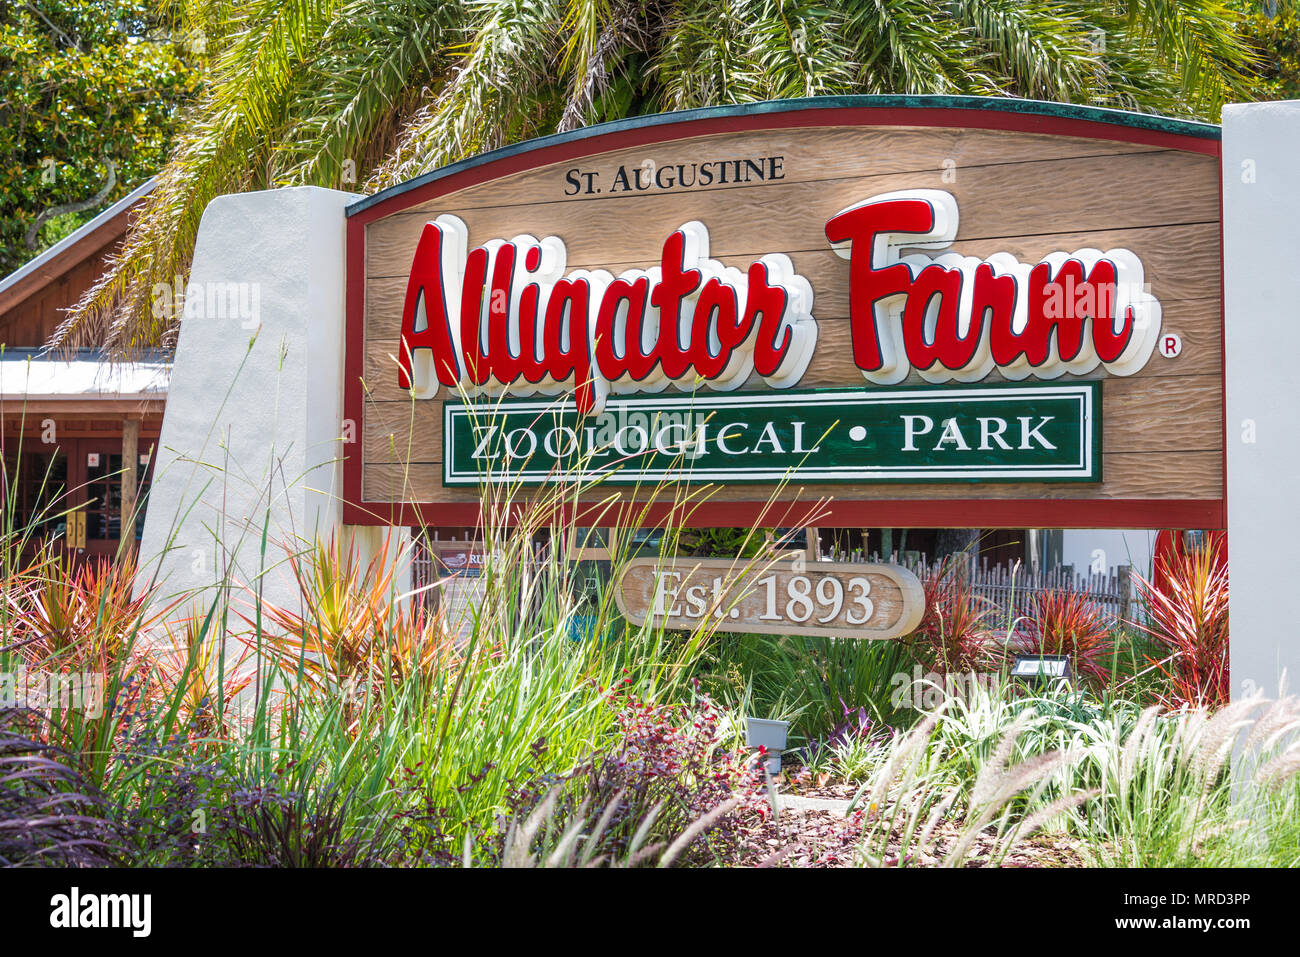 La rue Augustine Alligator Farm Zoological Park sur l'Île Anastasia à Saint Augustine, en Floride, est une attraction touristique populaire créée en 1893. Banque D'Images